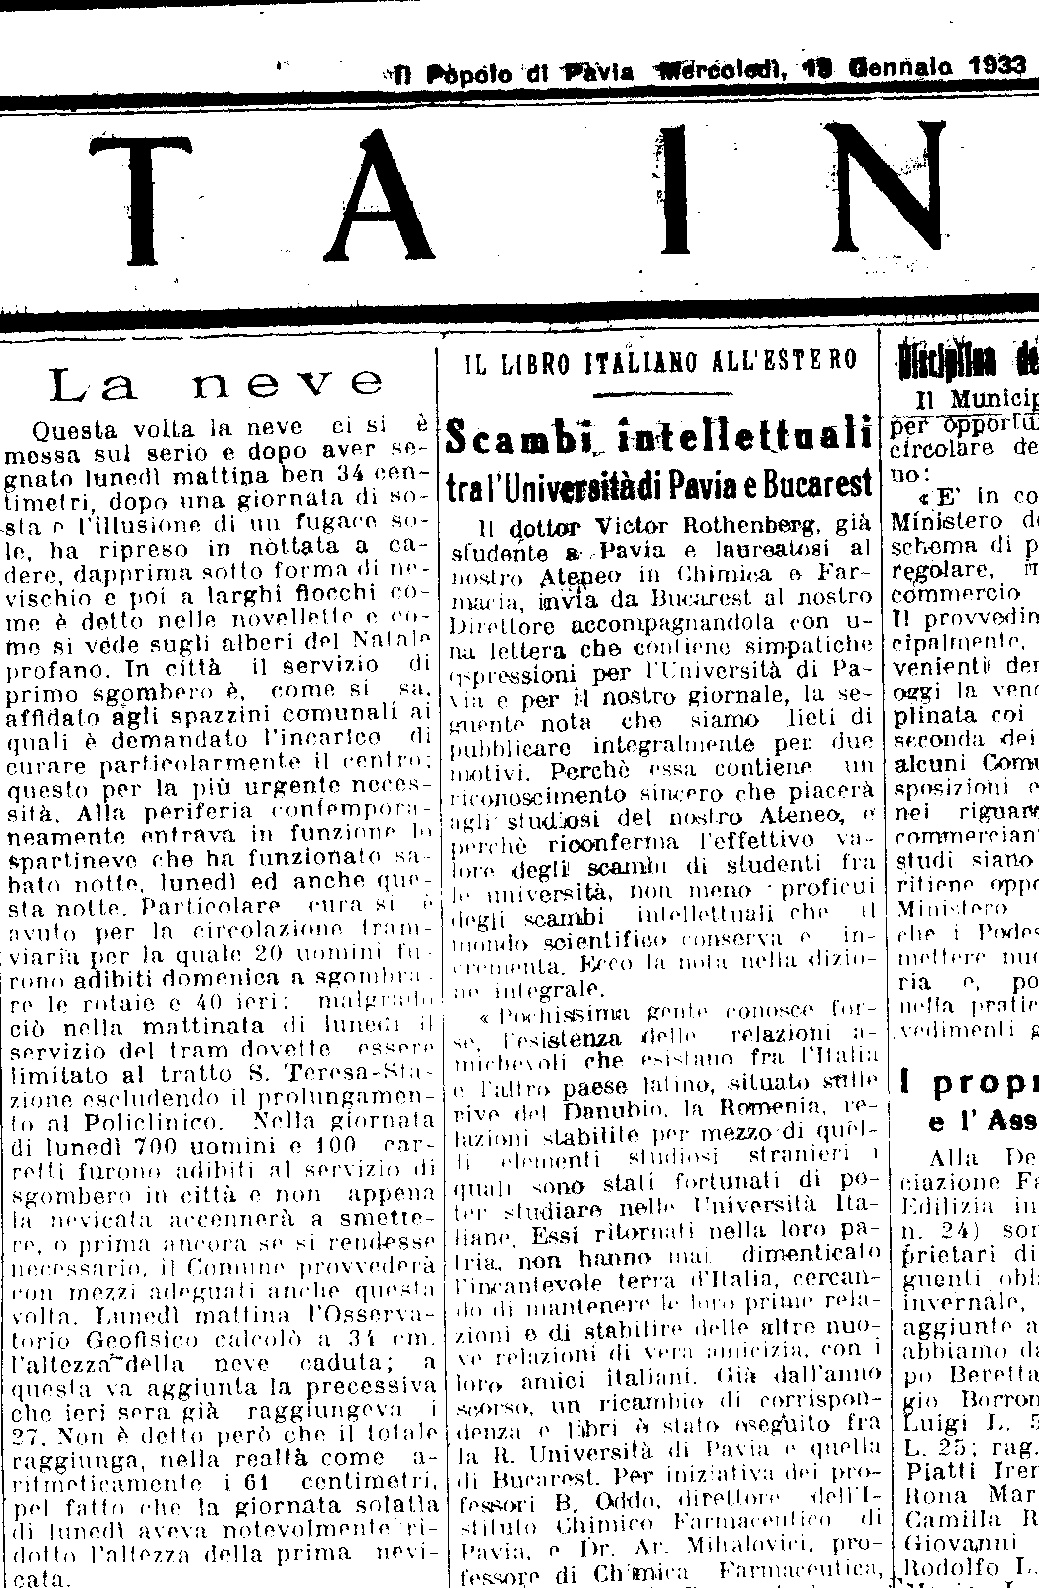 L'articolo de "La Provincia Pavese" del 18 Gennaio 1933